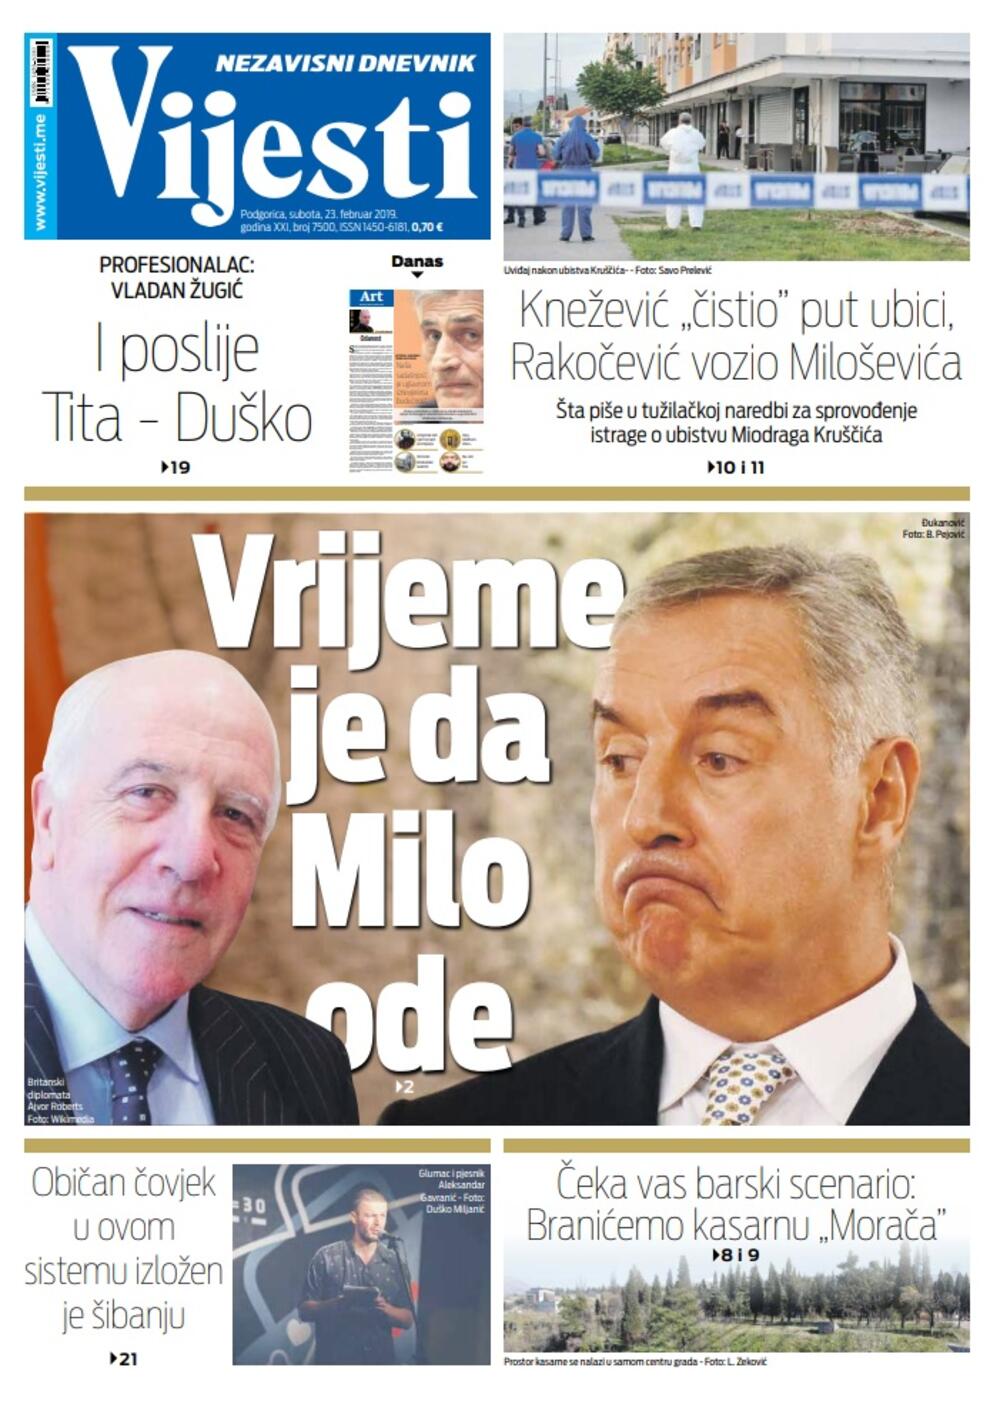 Naslovna strana "Vijesti" za 23. februar